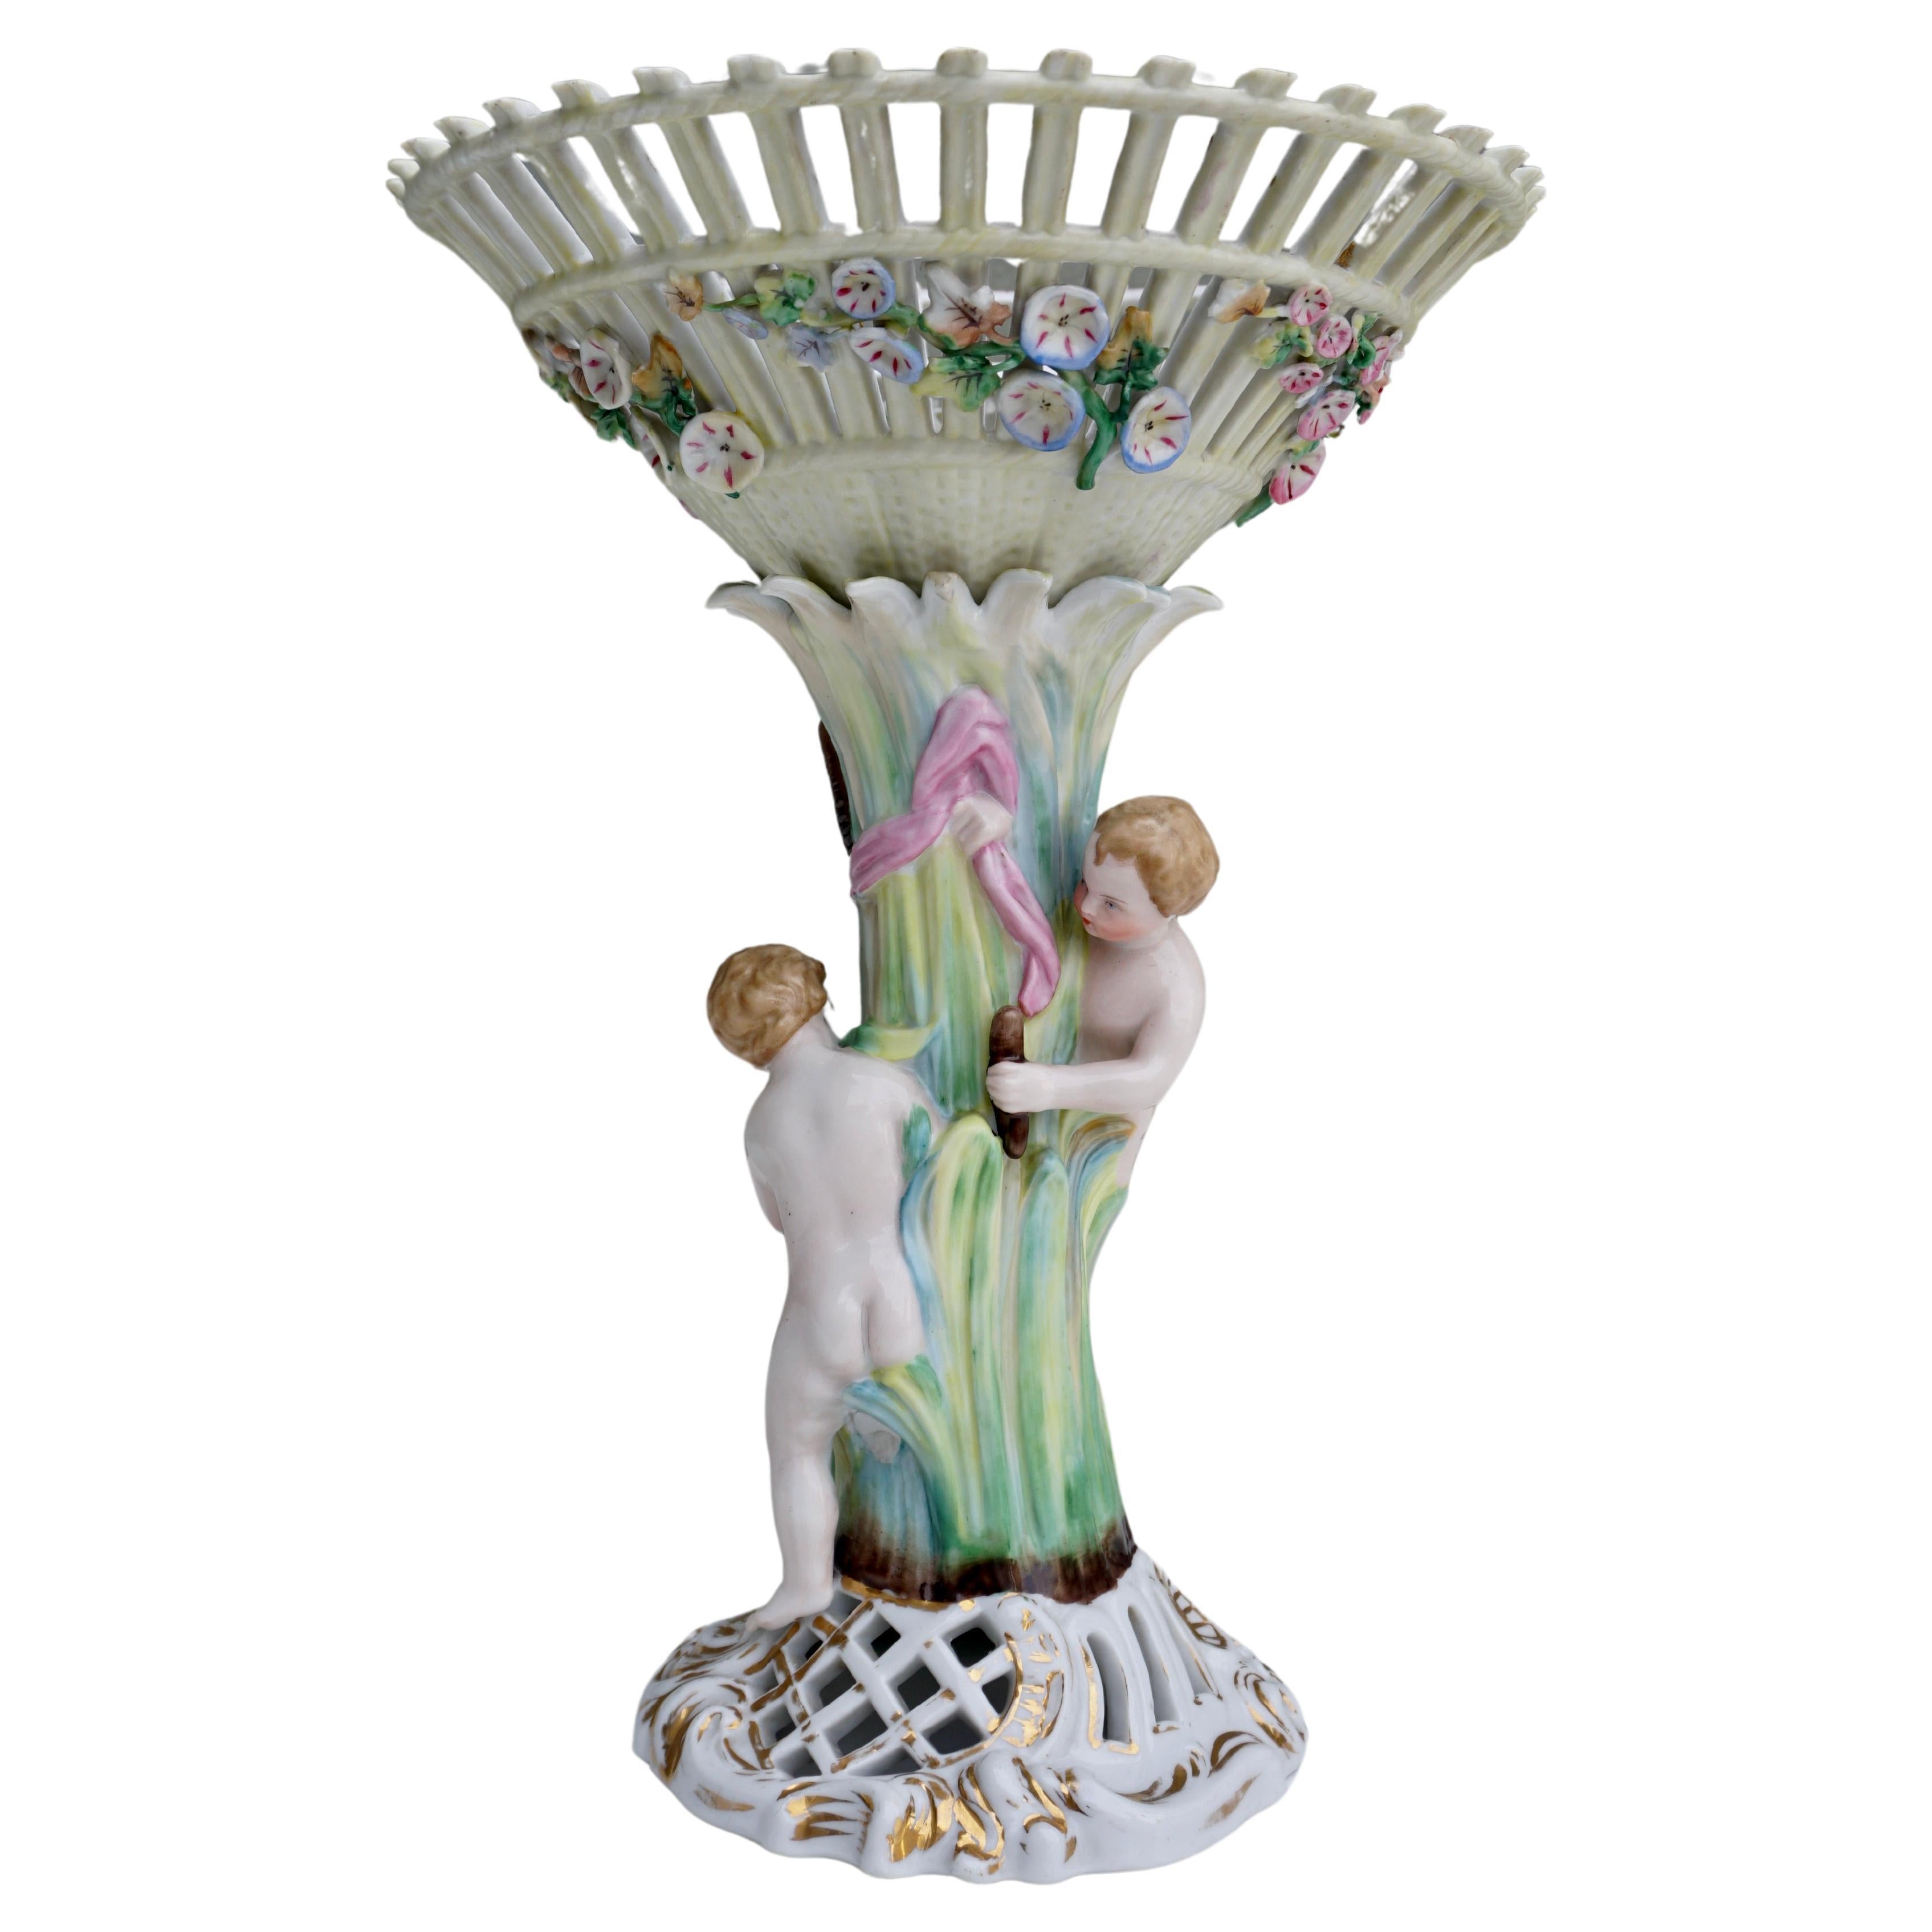 Porcelain Figural Cherub Jardinière or Centrepiece Bowl For Sale